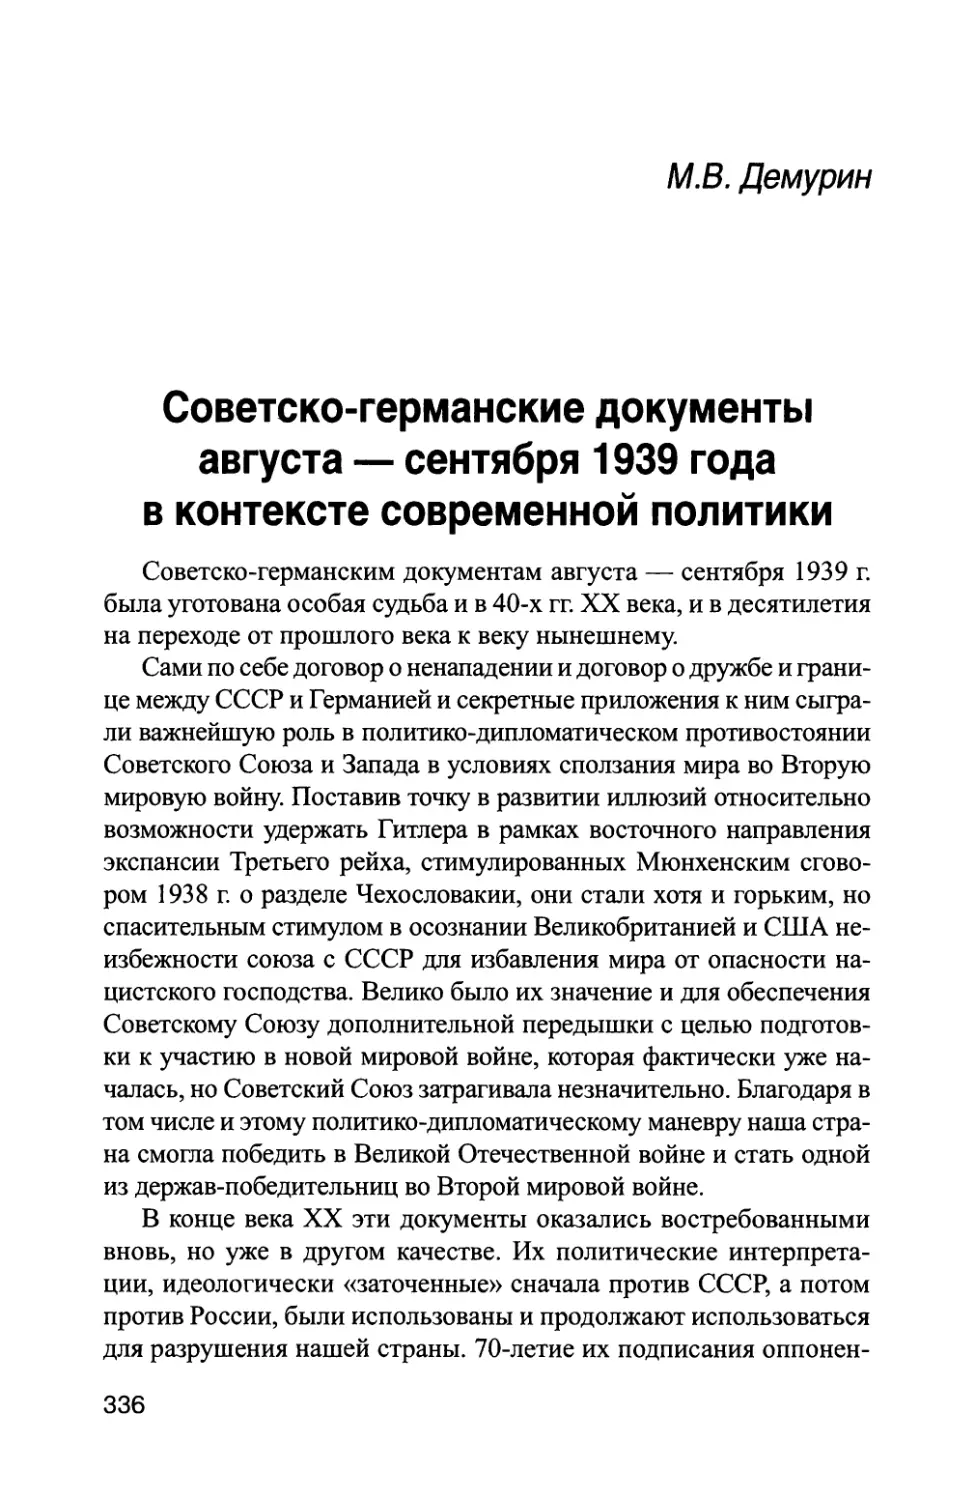 М.В. Демурин. Советско-германские документы августа — сентября 1939 года в контексте современной политики